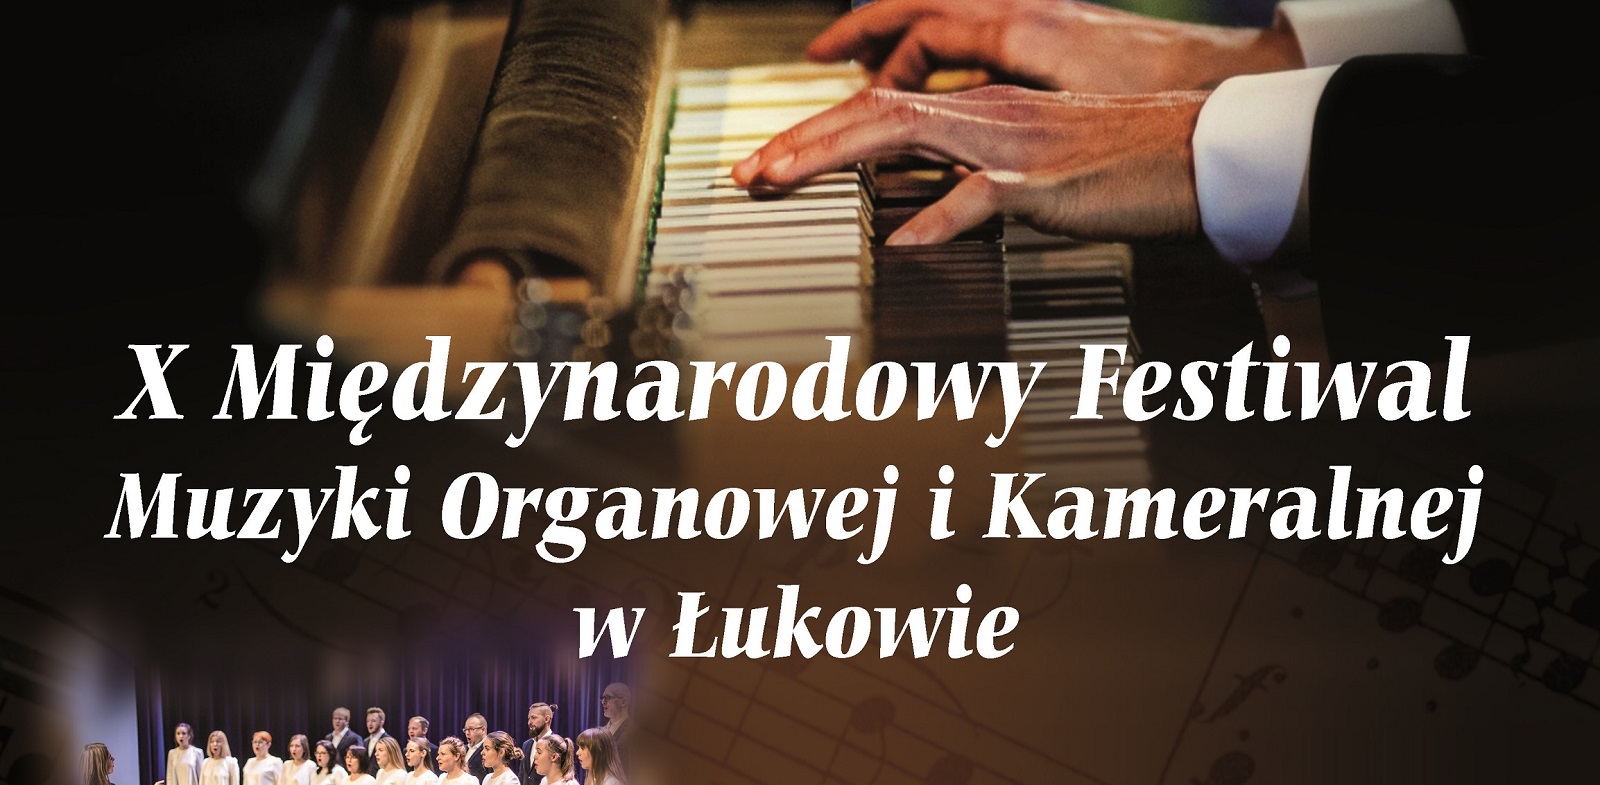 Rusza jubileuszowy festiwal organowy